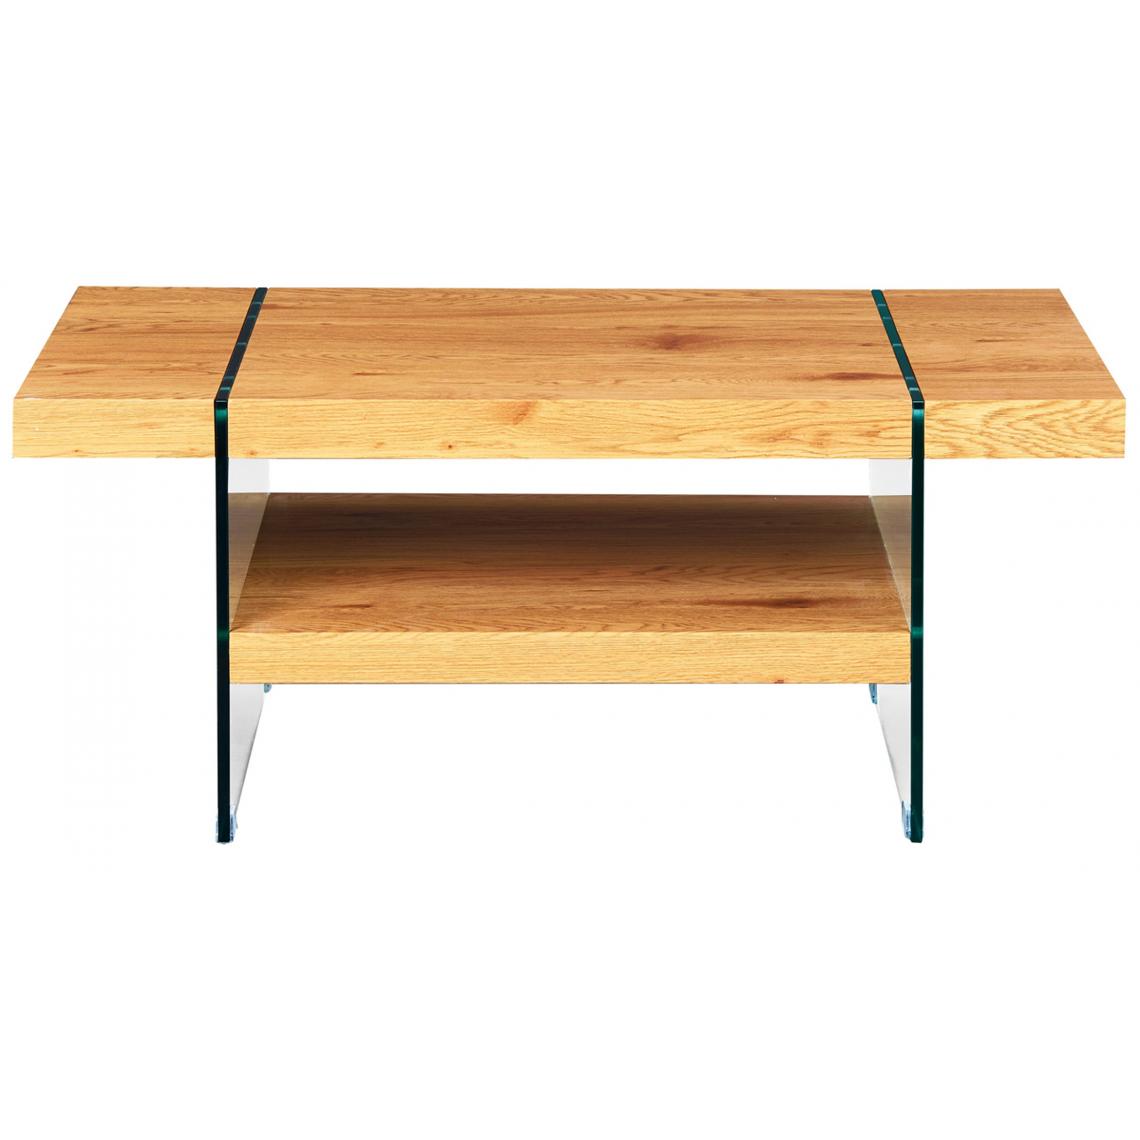 Pegane - Table basse en MDF avec rangement coloris naturel - Dim : L110 x H45.5 x P60 cm - Tables basses